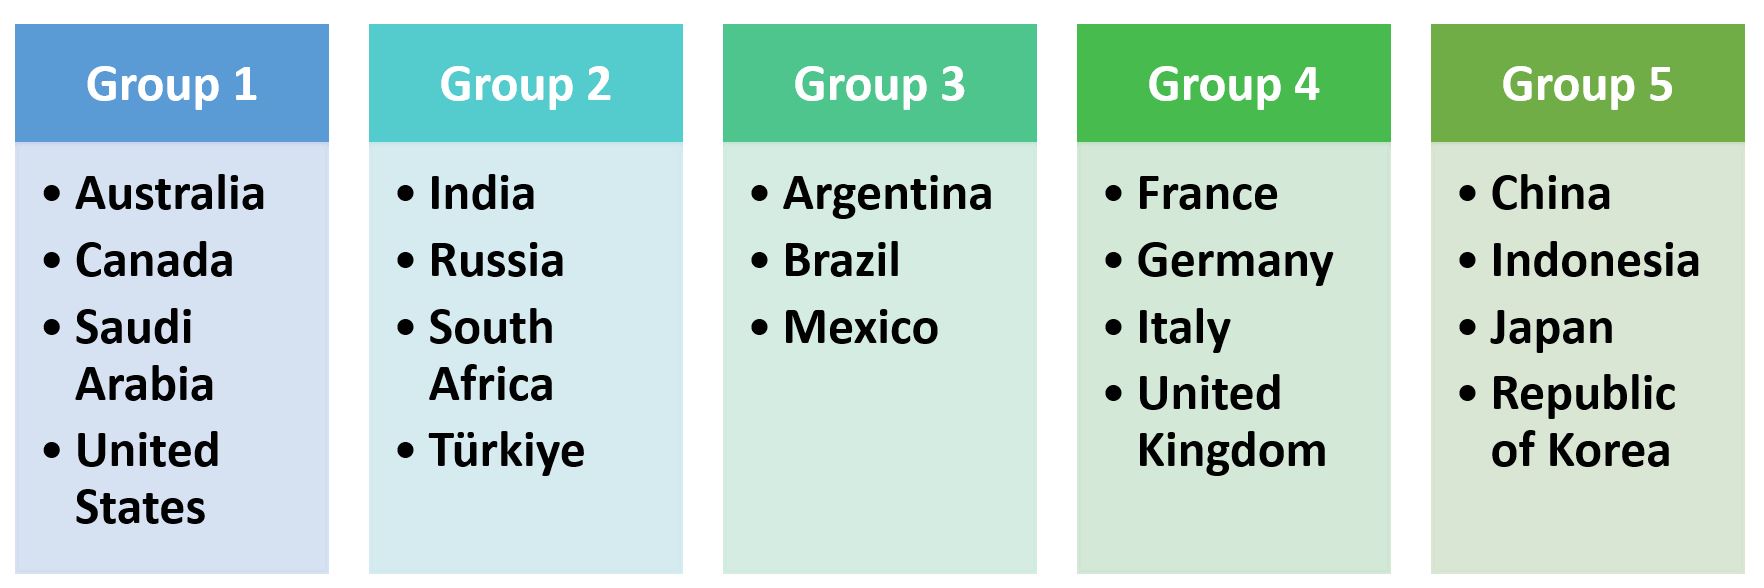 Groups of G20 Members